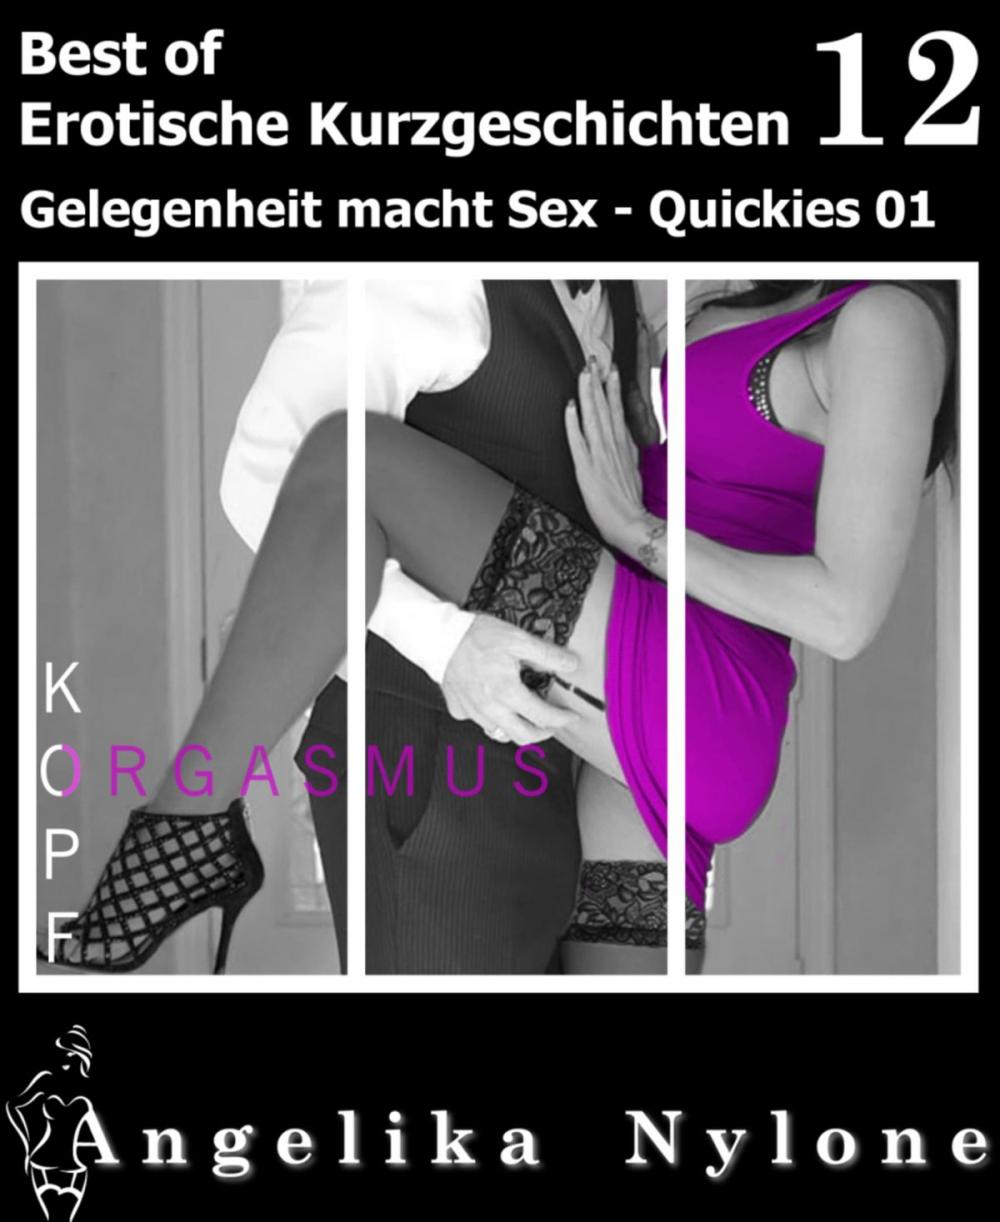 Big bigCover of Erotische Kurzgeschichten - Best of 12